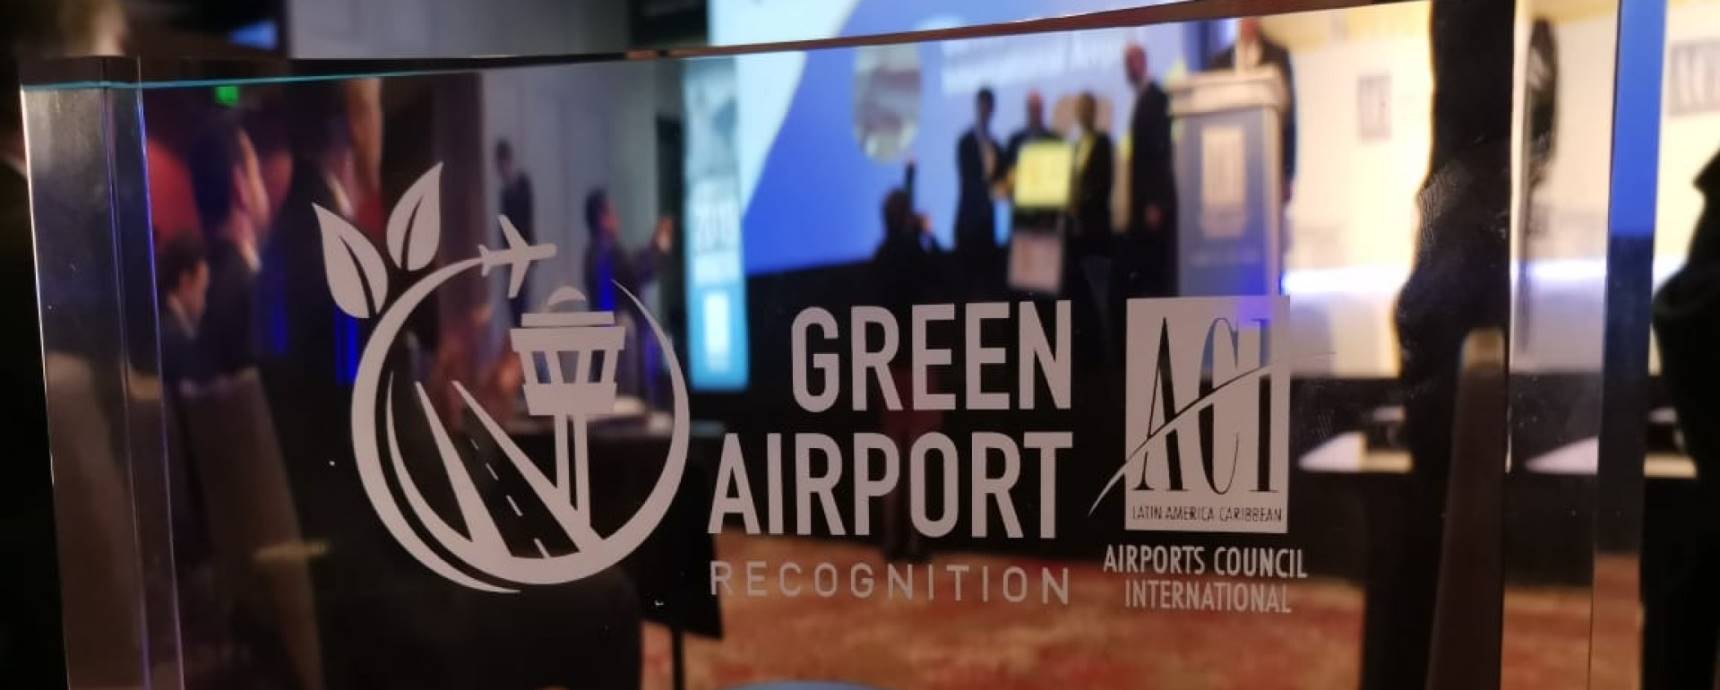 Aeroporto Internacional de Florianópolis recebe reconhecimento internacional de sustentabilidade da principal associação de aeroportos do mundo